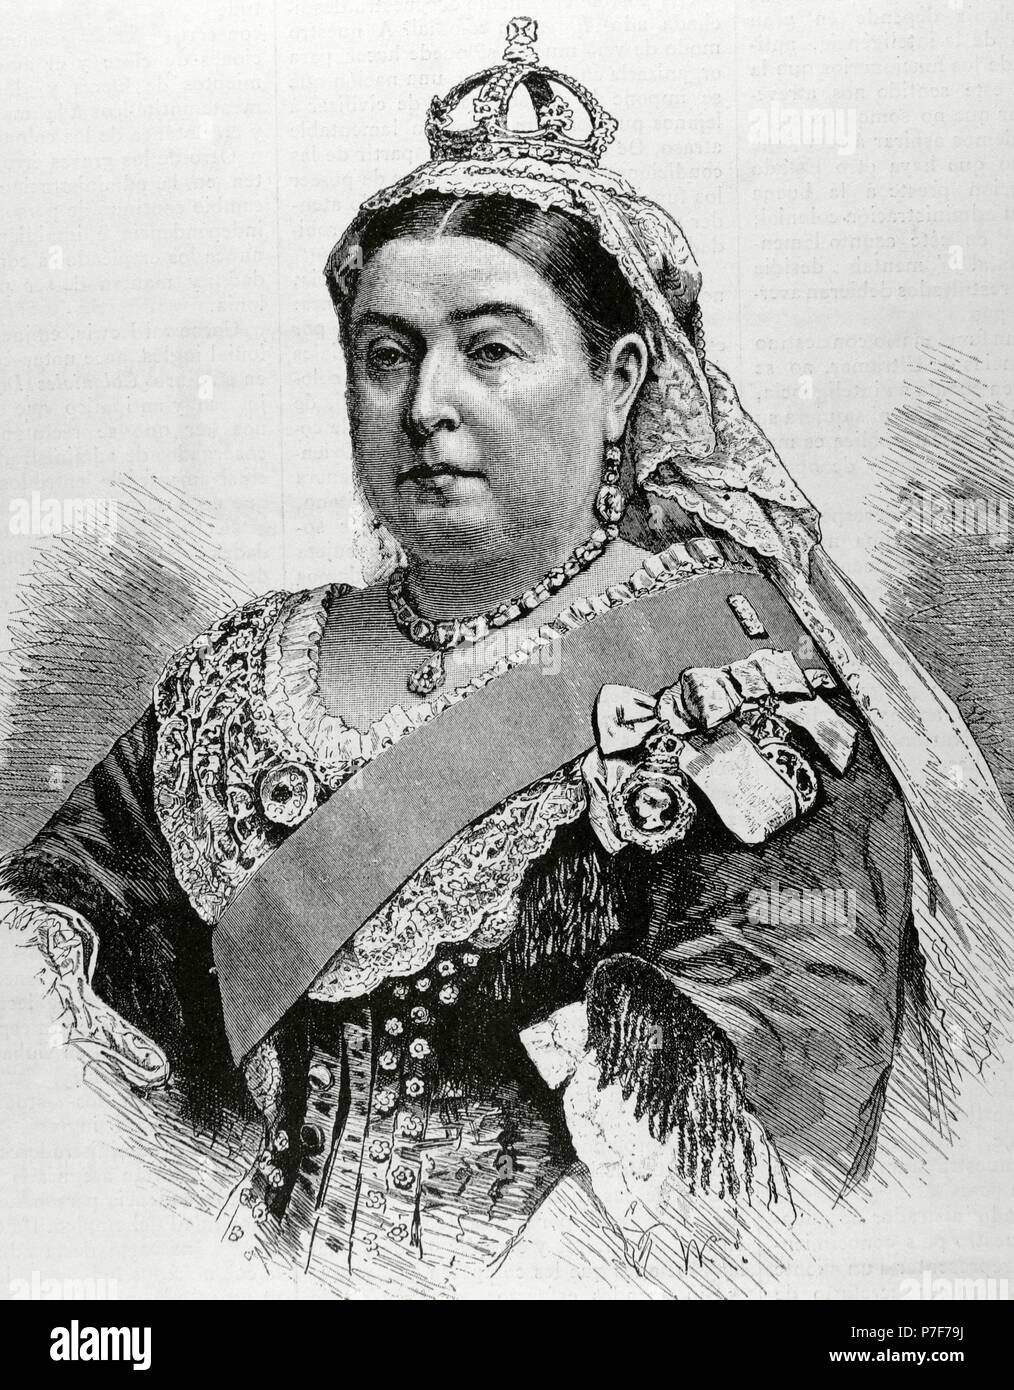 Victoria ich (1819-1901). Königin der Berichtswoche von Großbritannien und Irland (1837-1901) und Kaiserin von Indien (1876-1901). Porträt. Gravur. "La Ilustracion", 1887. Stockfoto